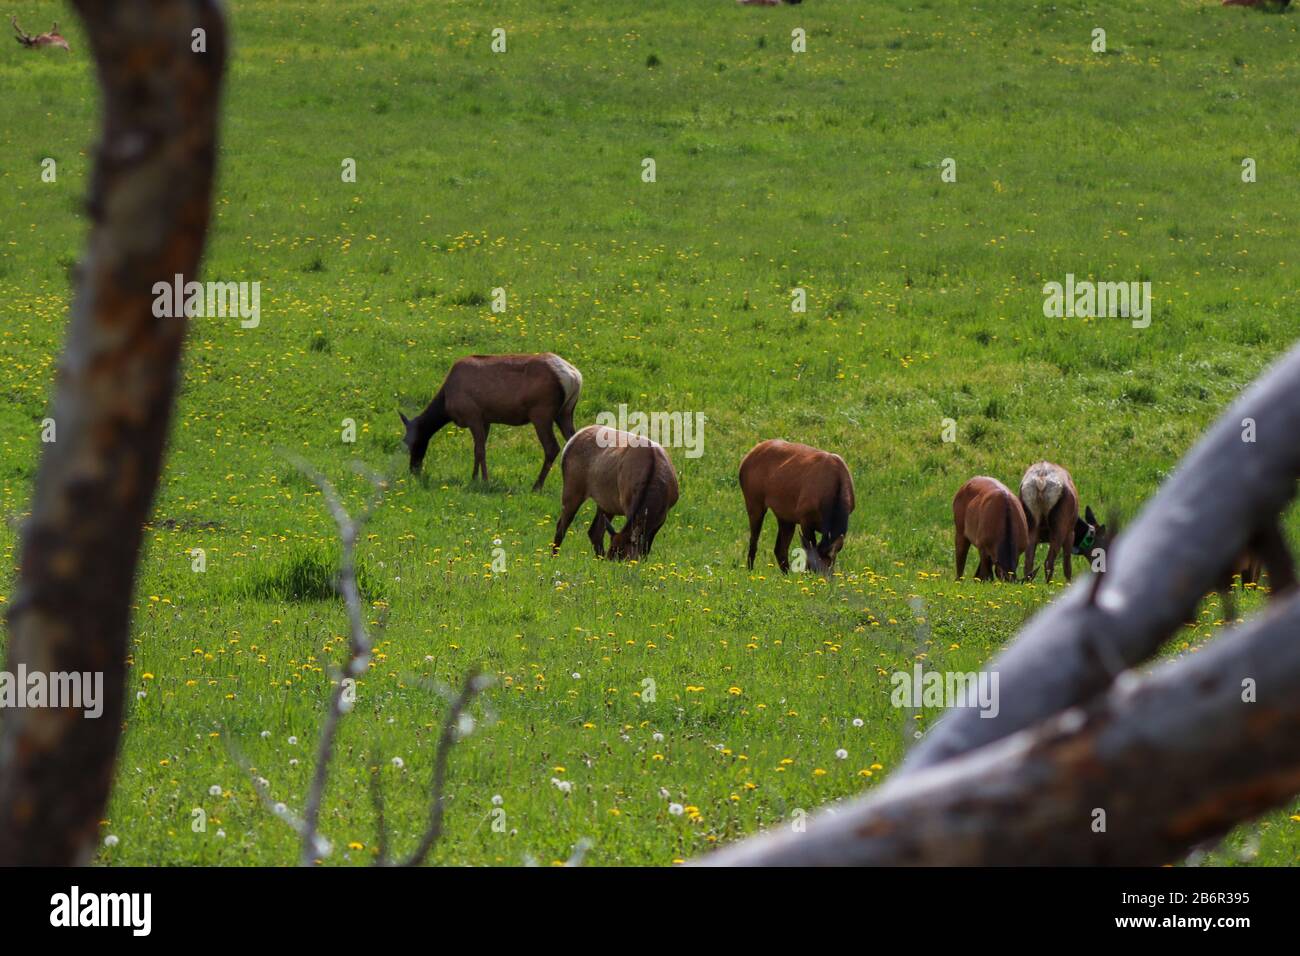 Una manada de alces pastando en un exuberante campo verde. Fotografía de alta calidad Foto de stock